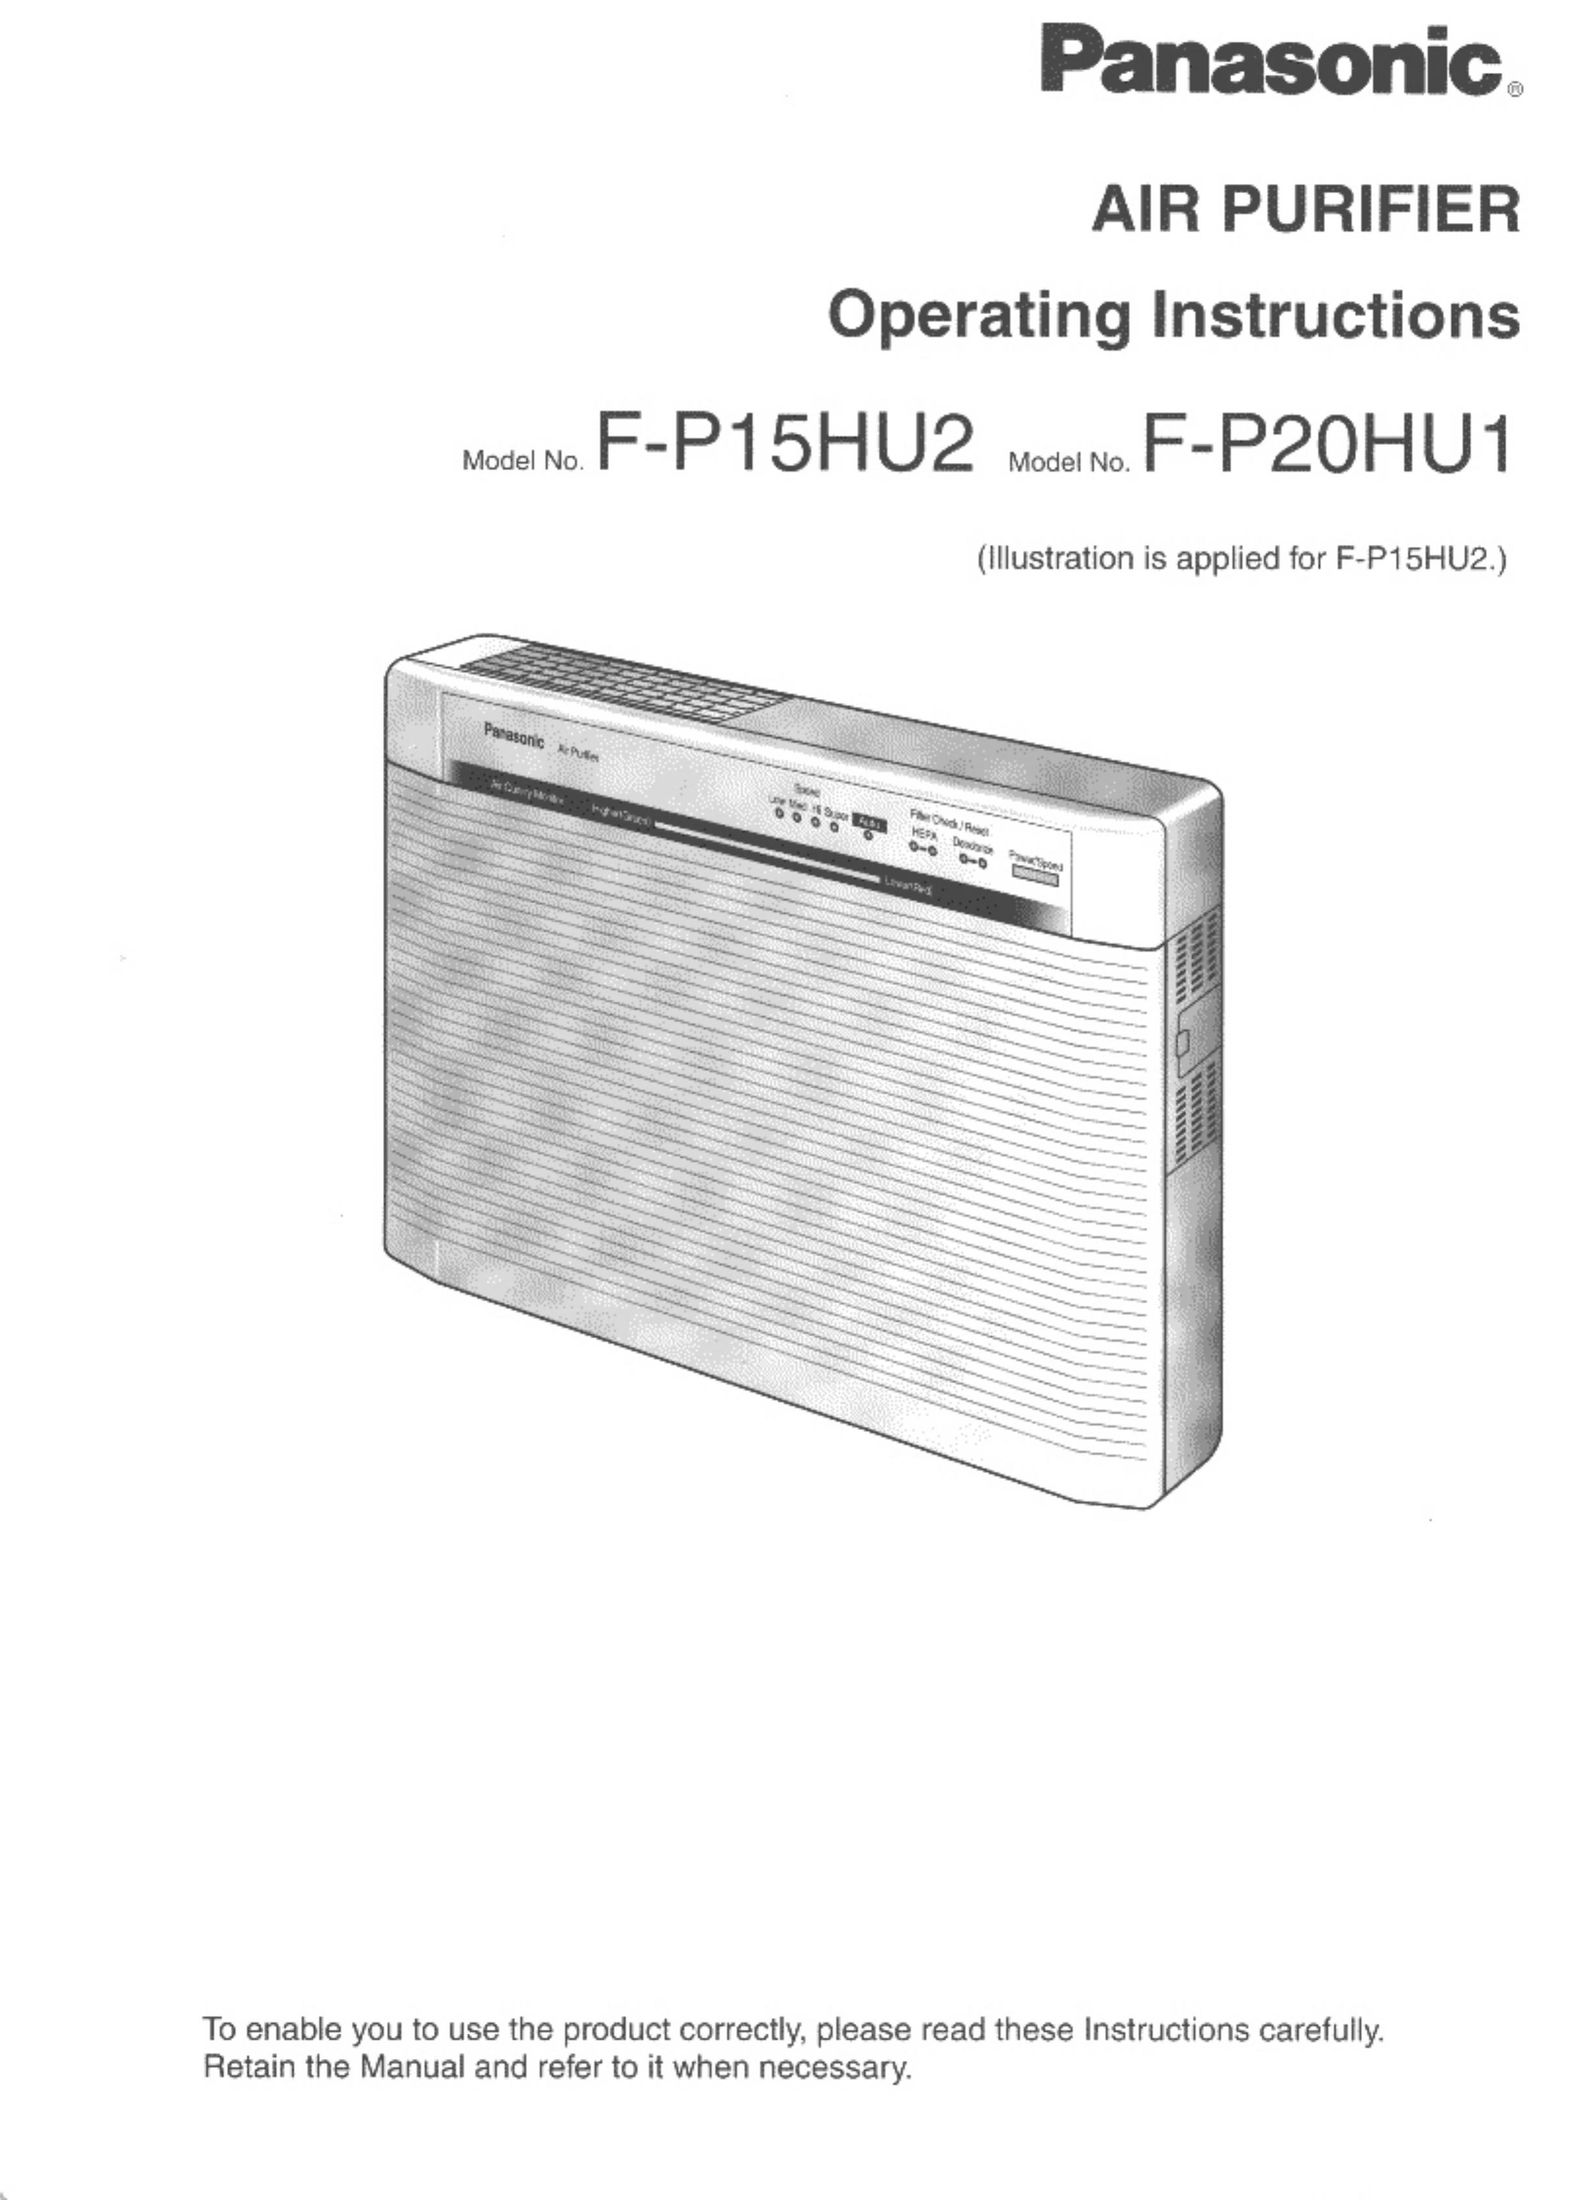 Panasonic F-P20HU1 Air Cleaner User Manual